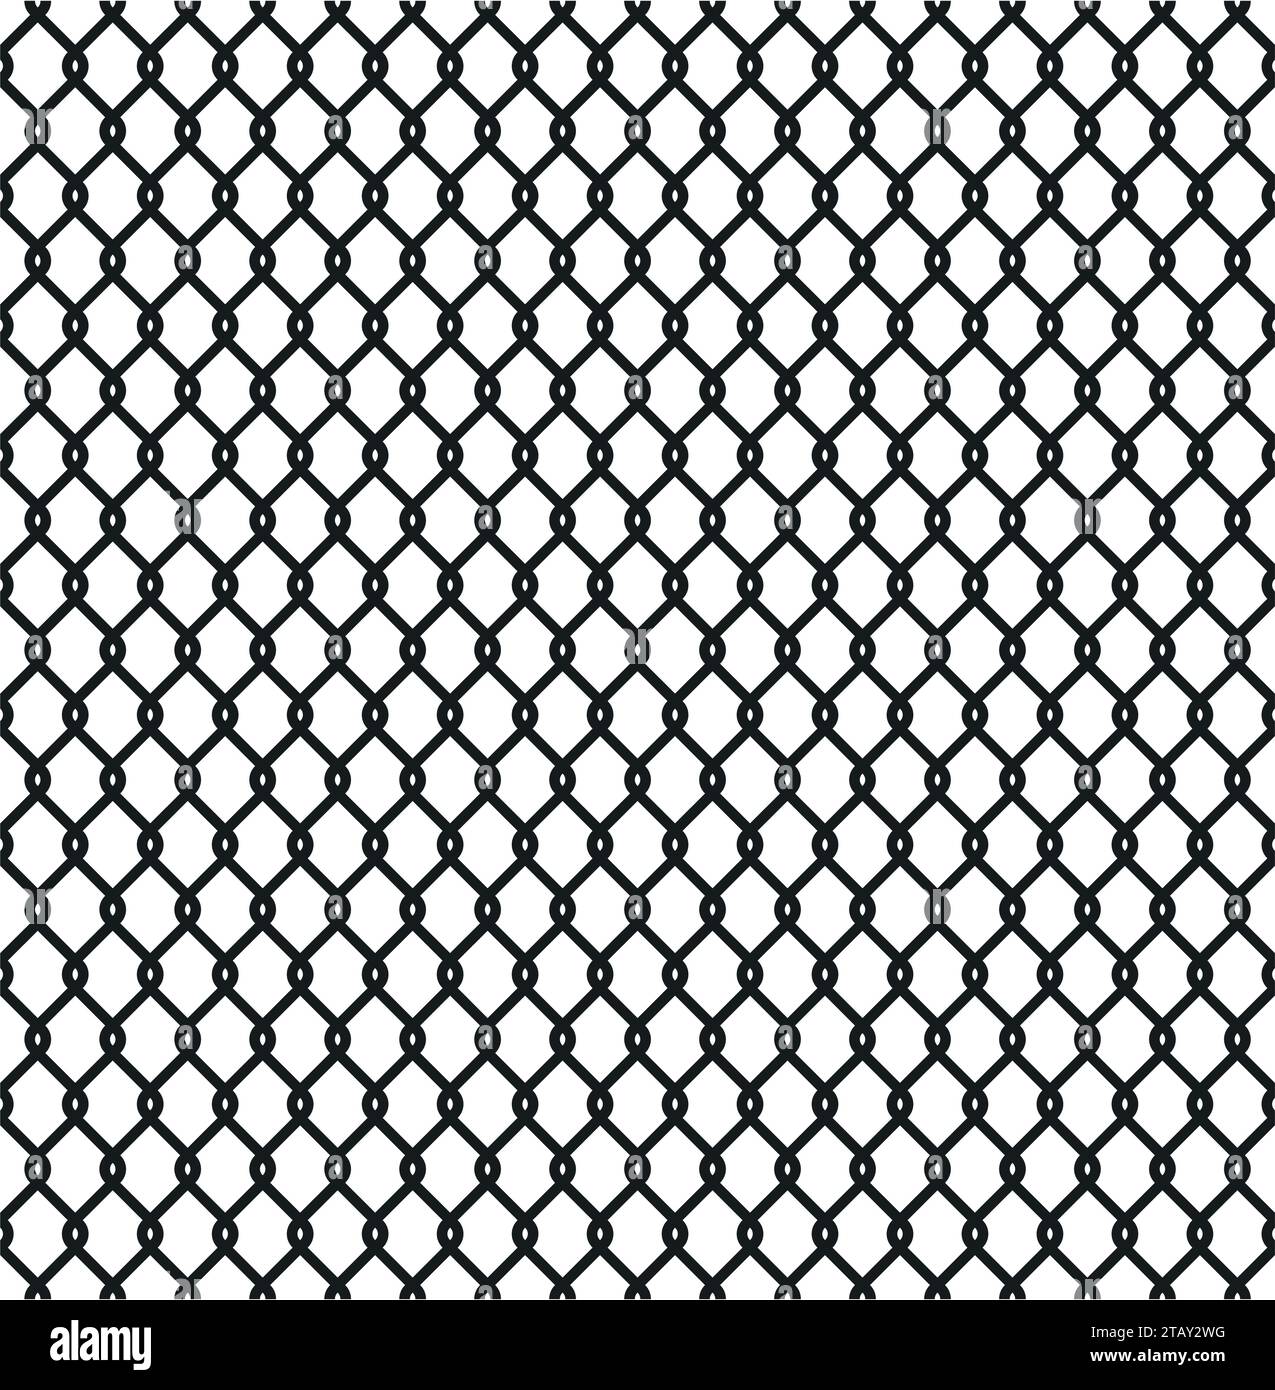 Patrón de malla de alambre negro sobre fondo blanco Fotografía de